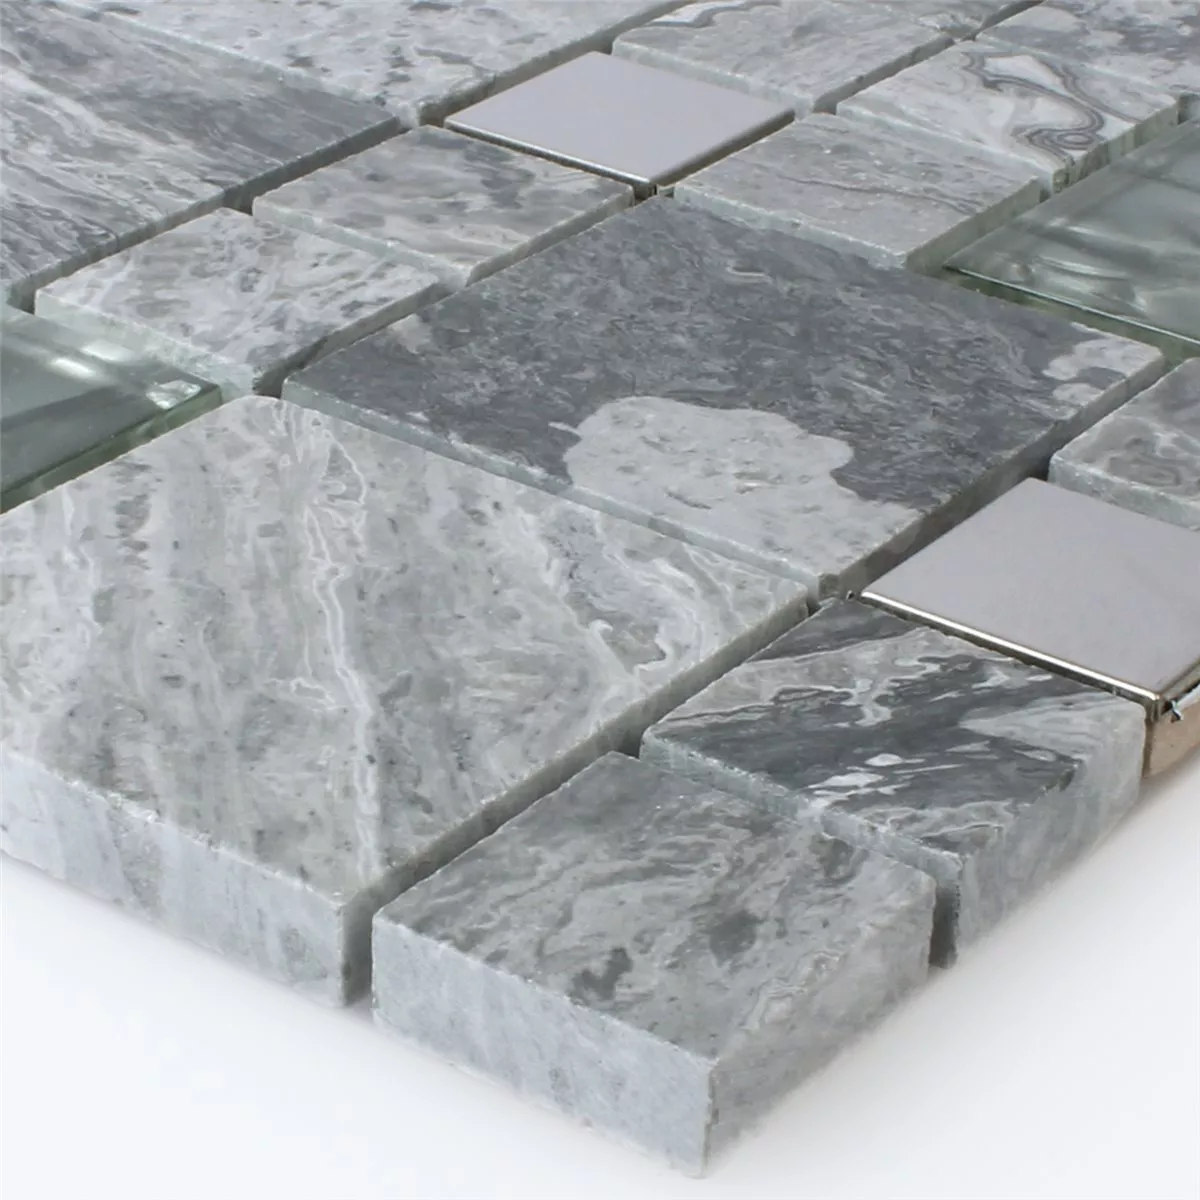 Muster von Mosaikfliesen Metall Glas Naturstein Mix Grau Silber